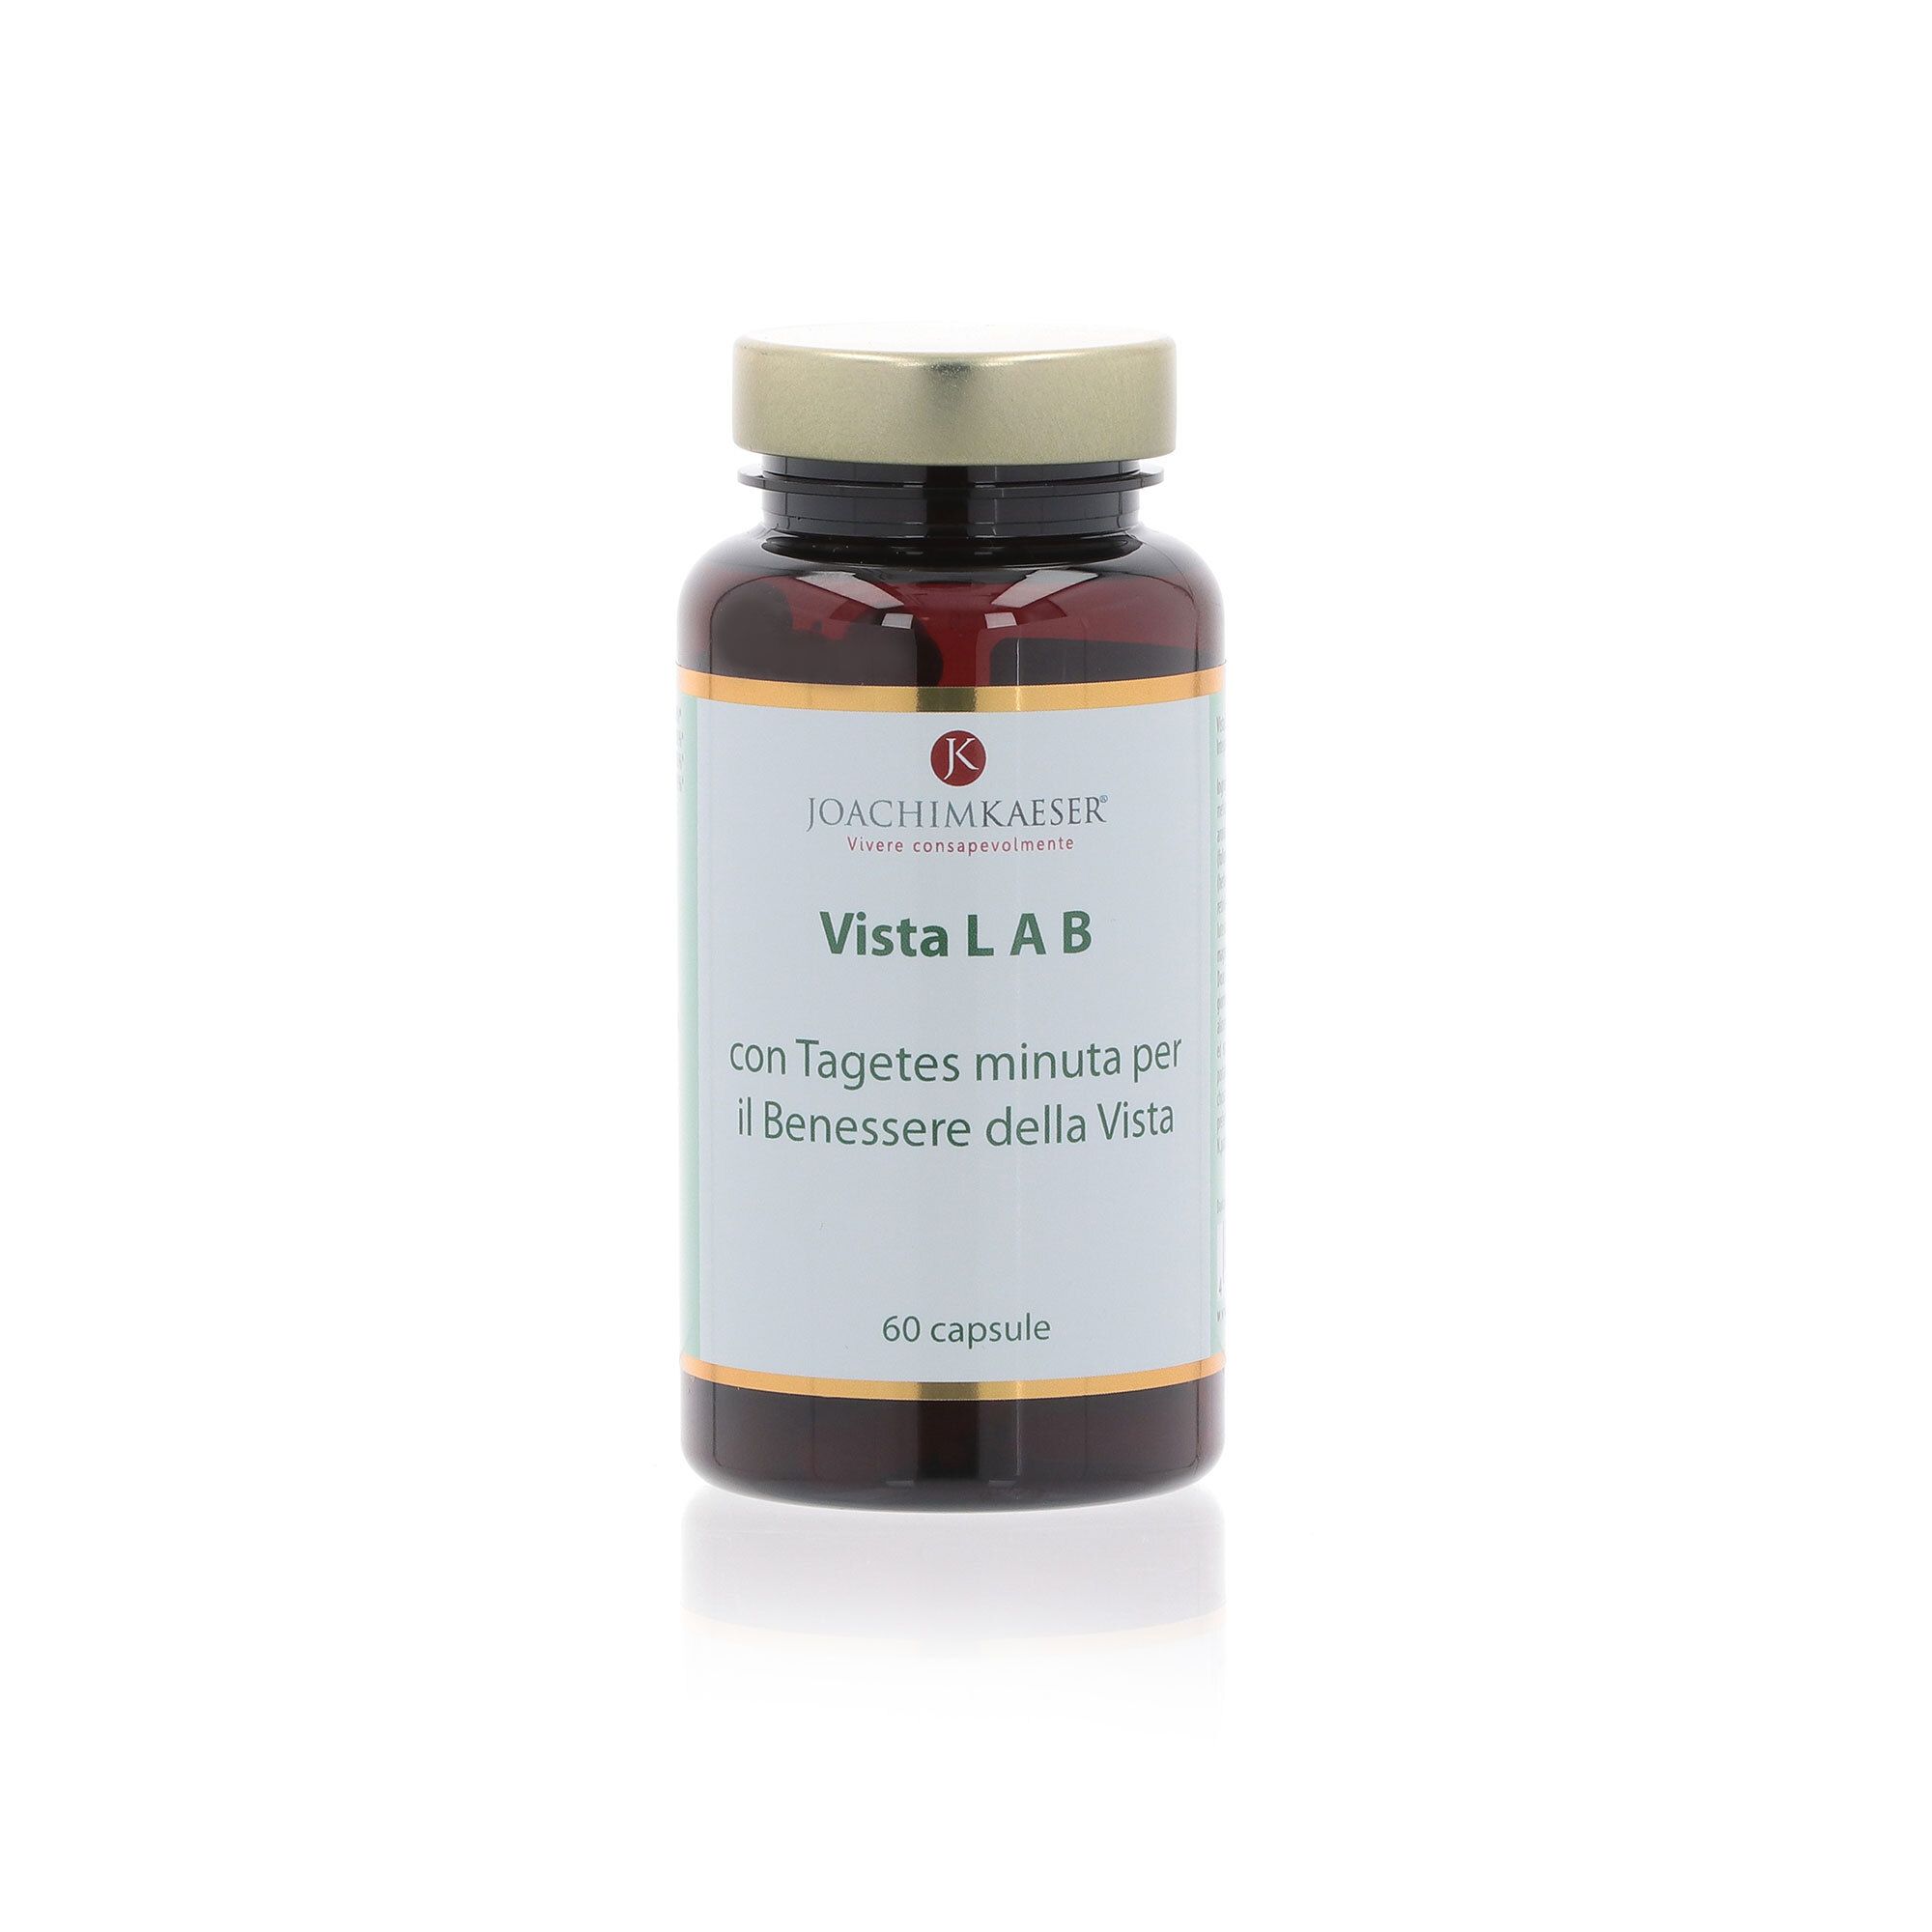 Image of Vista LAB integratore alimentare con vitamine